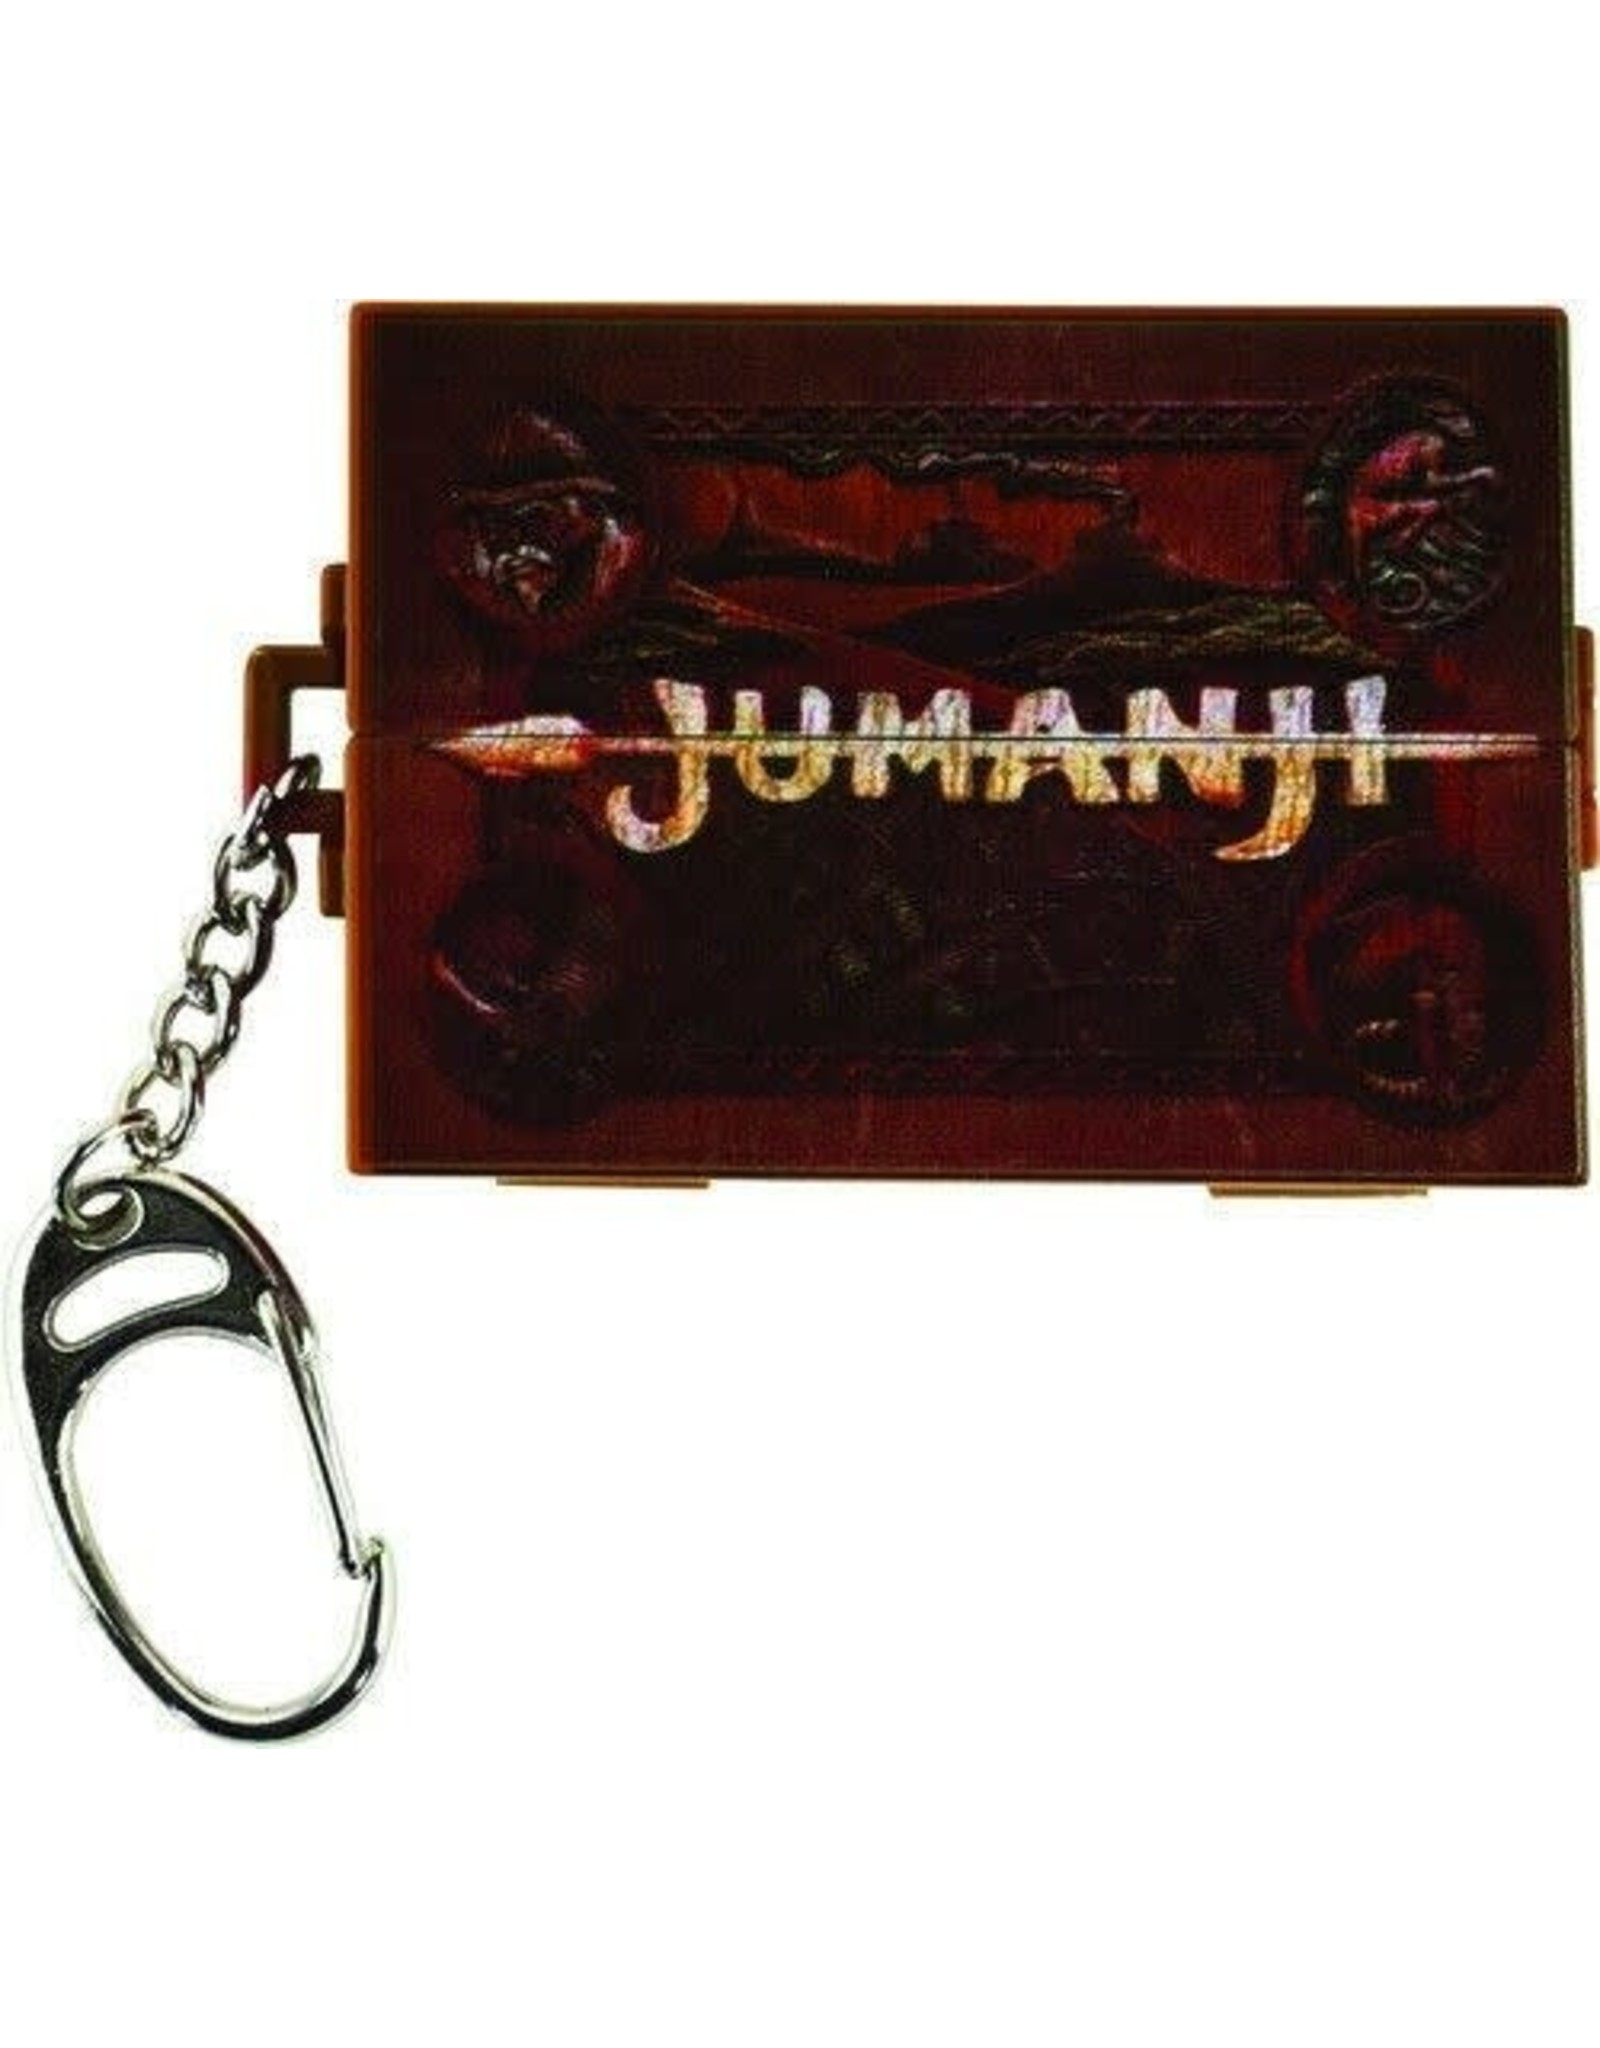 Jumanji Game Keychain